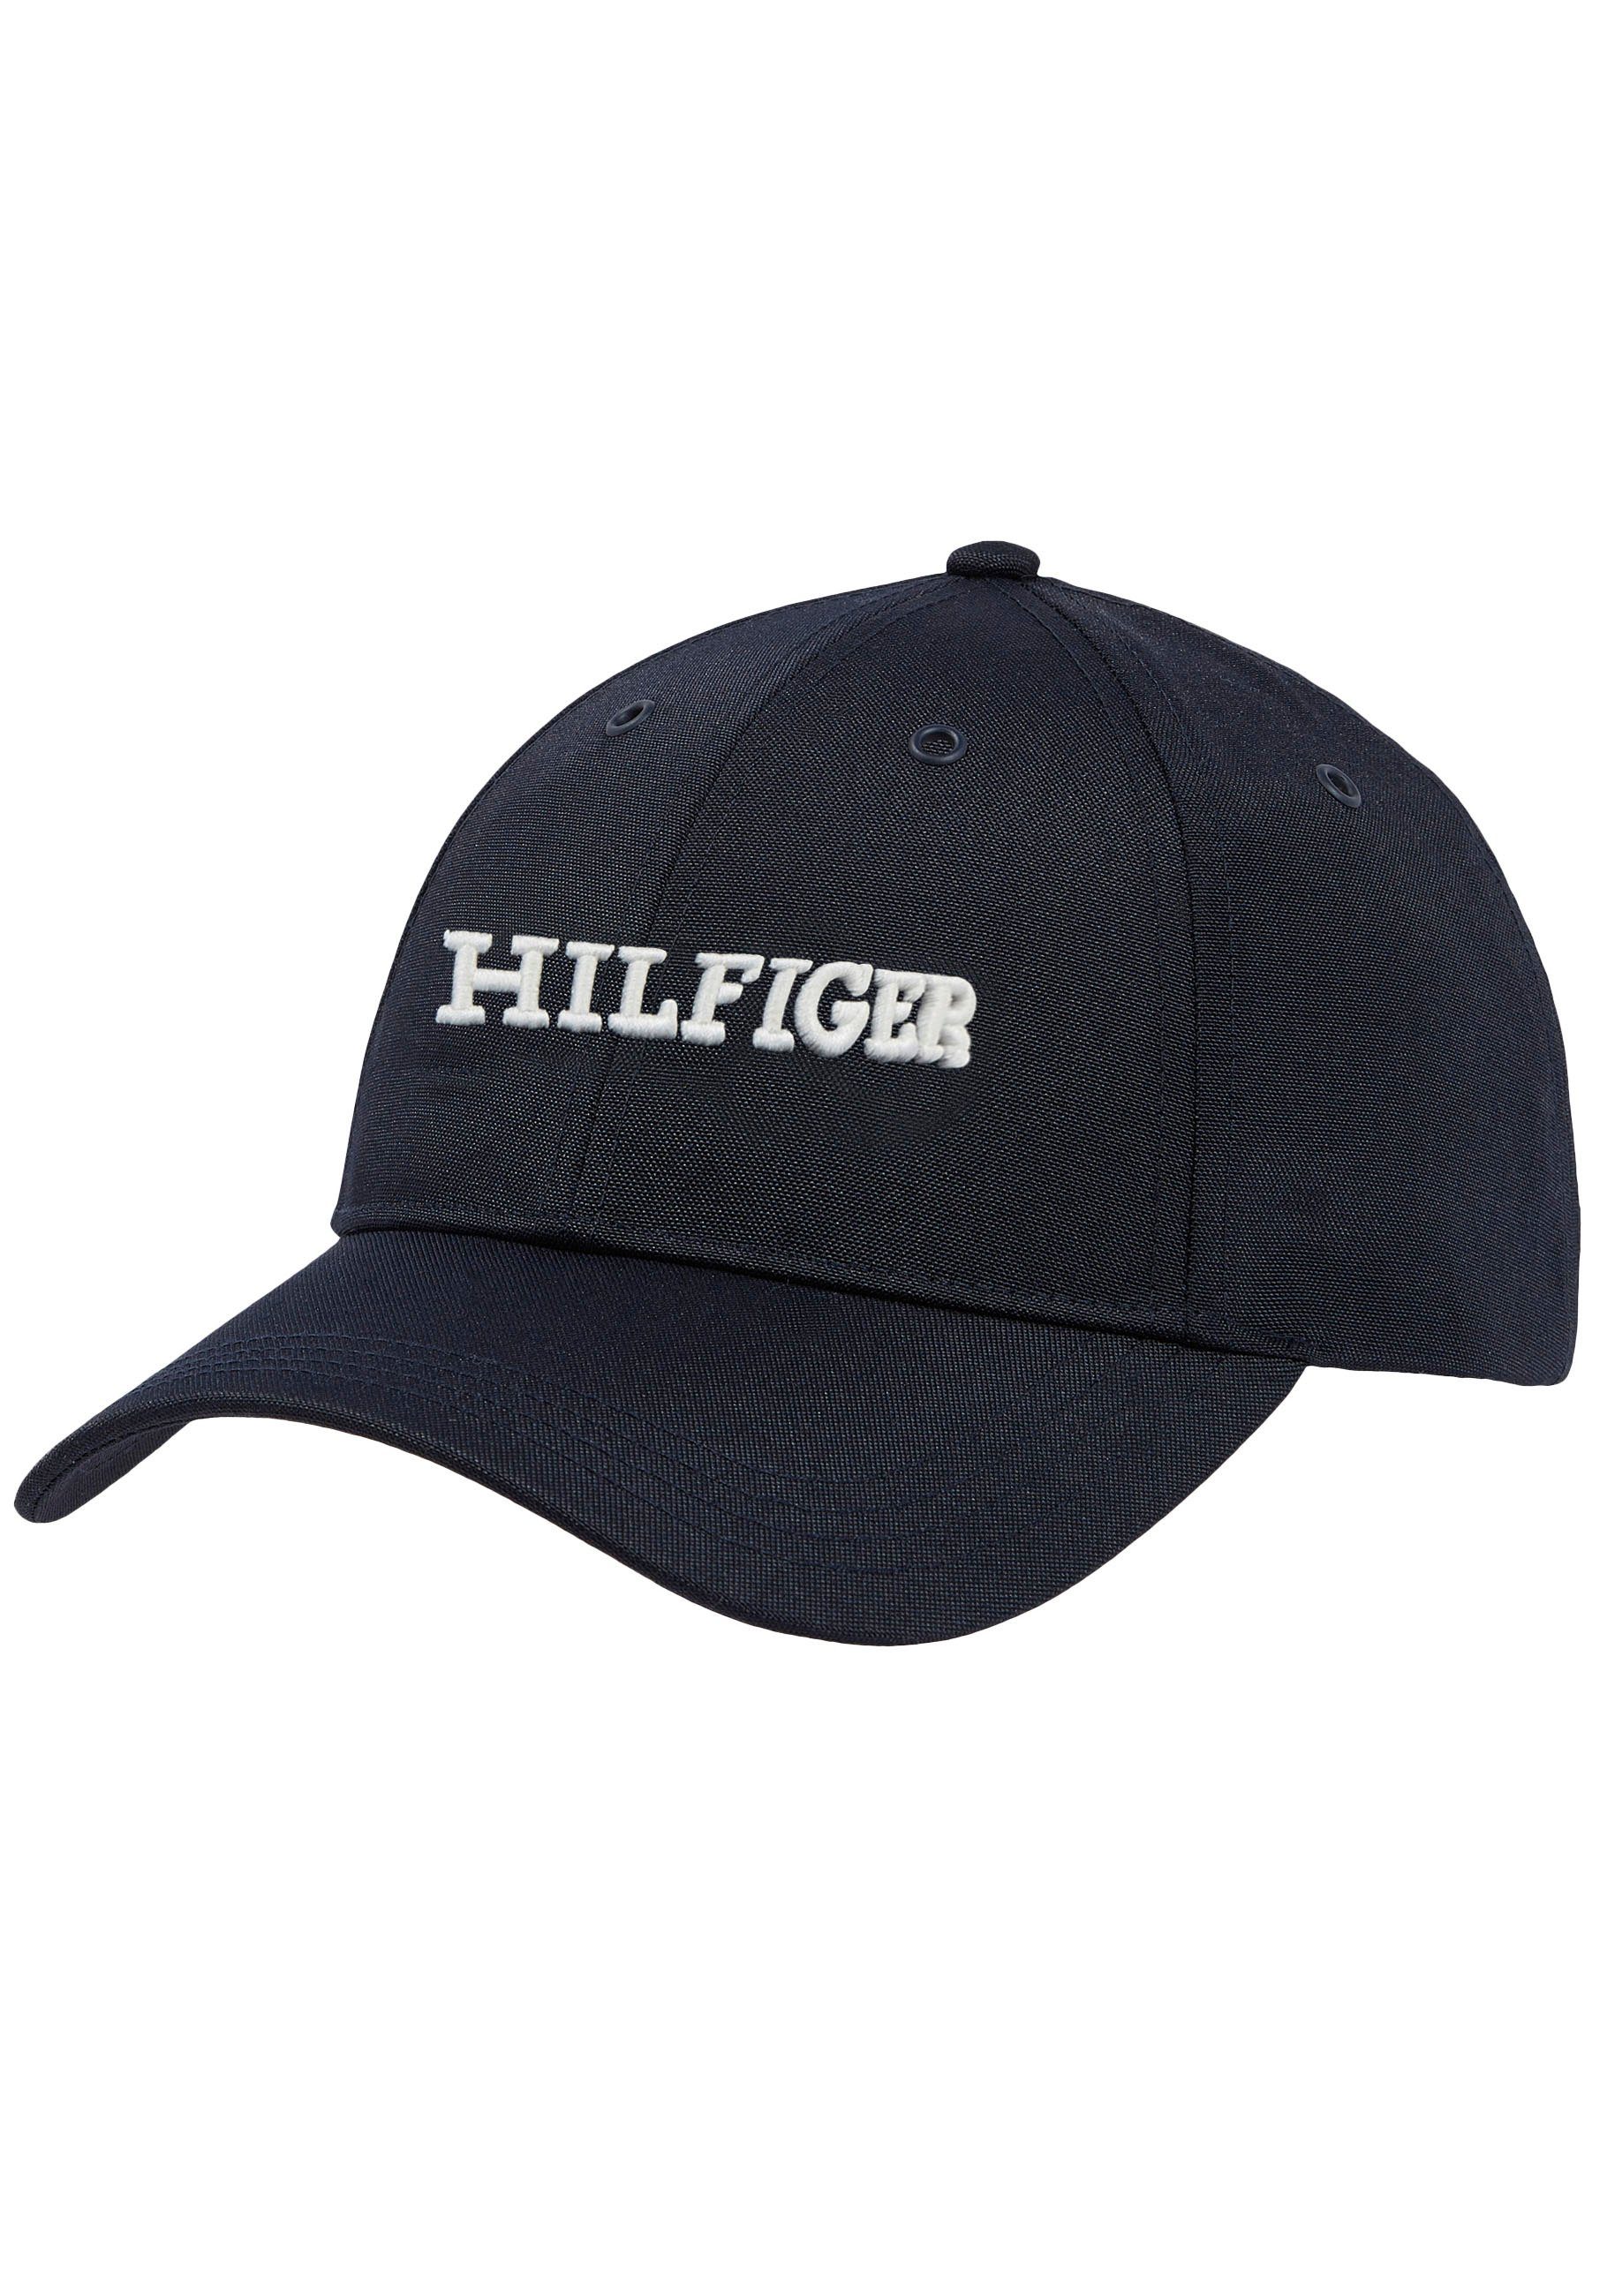 Tommy Hilfiger Baseball Logo vorn großer mit HILFIGER Space Hilfiger Stickerei Blue CAP Cap